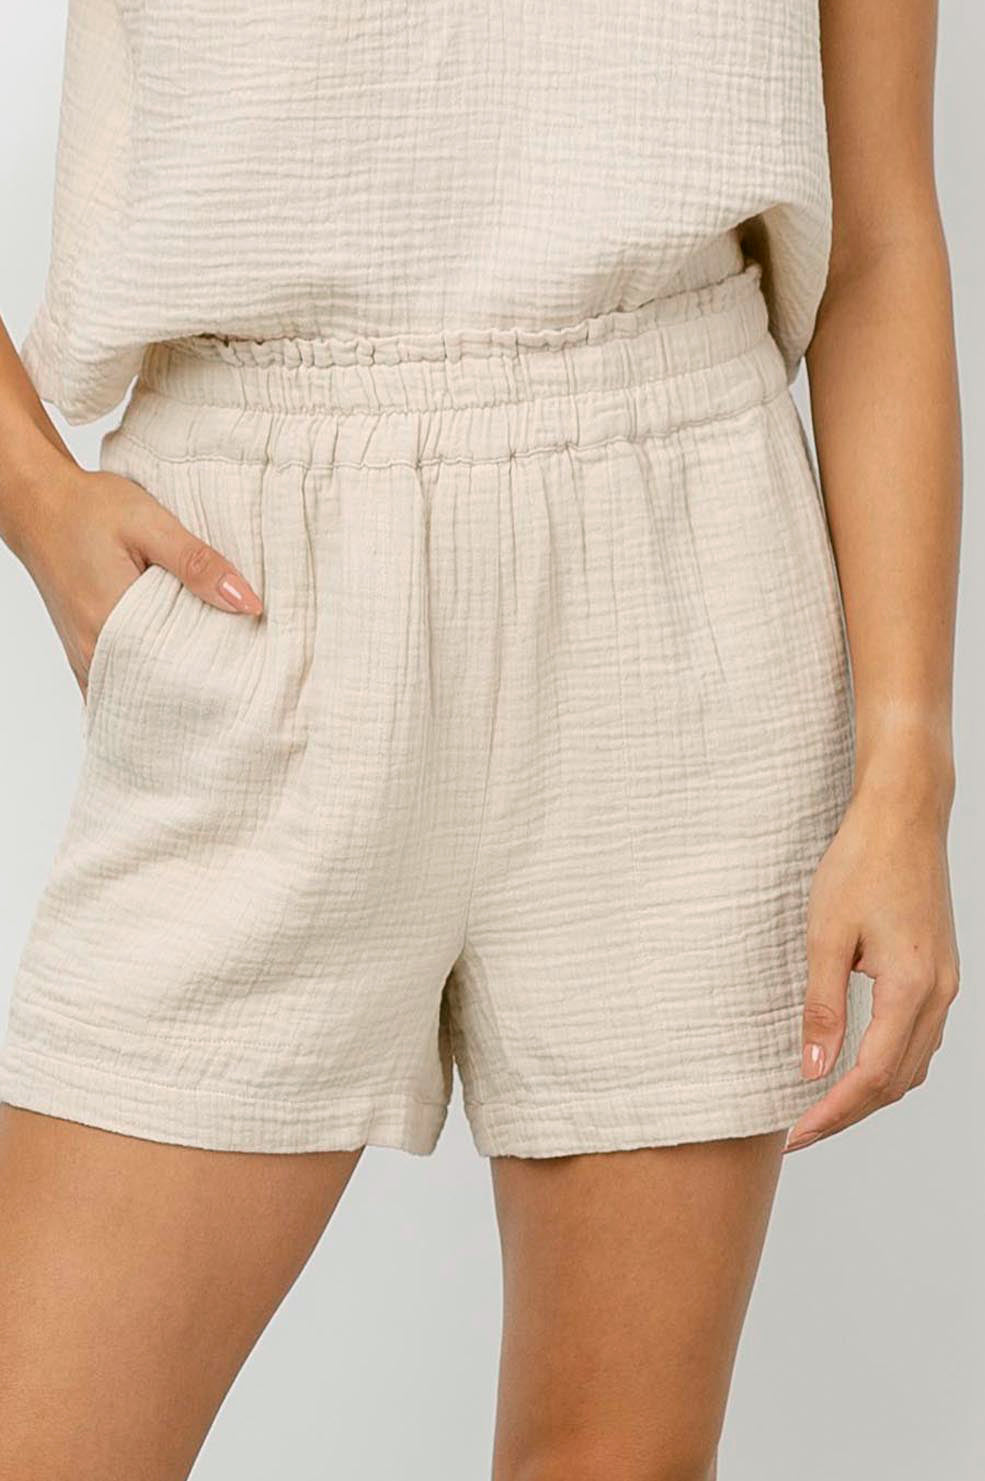 'Leighton' High-Rise Cotton Shorts - Flax